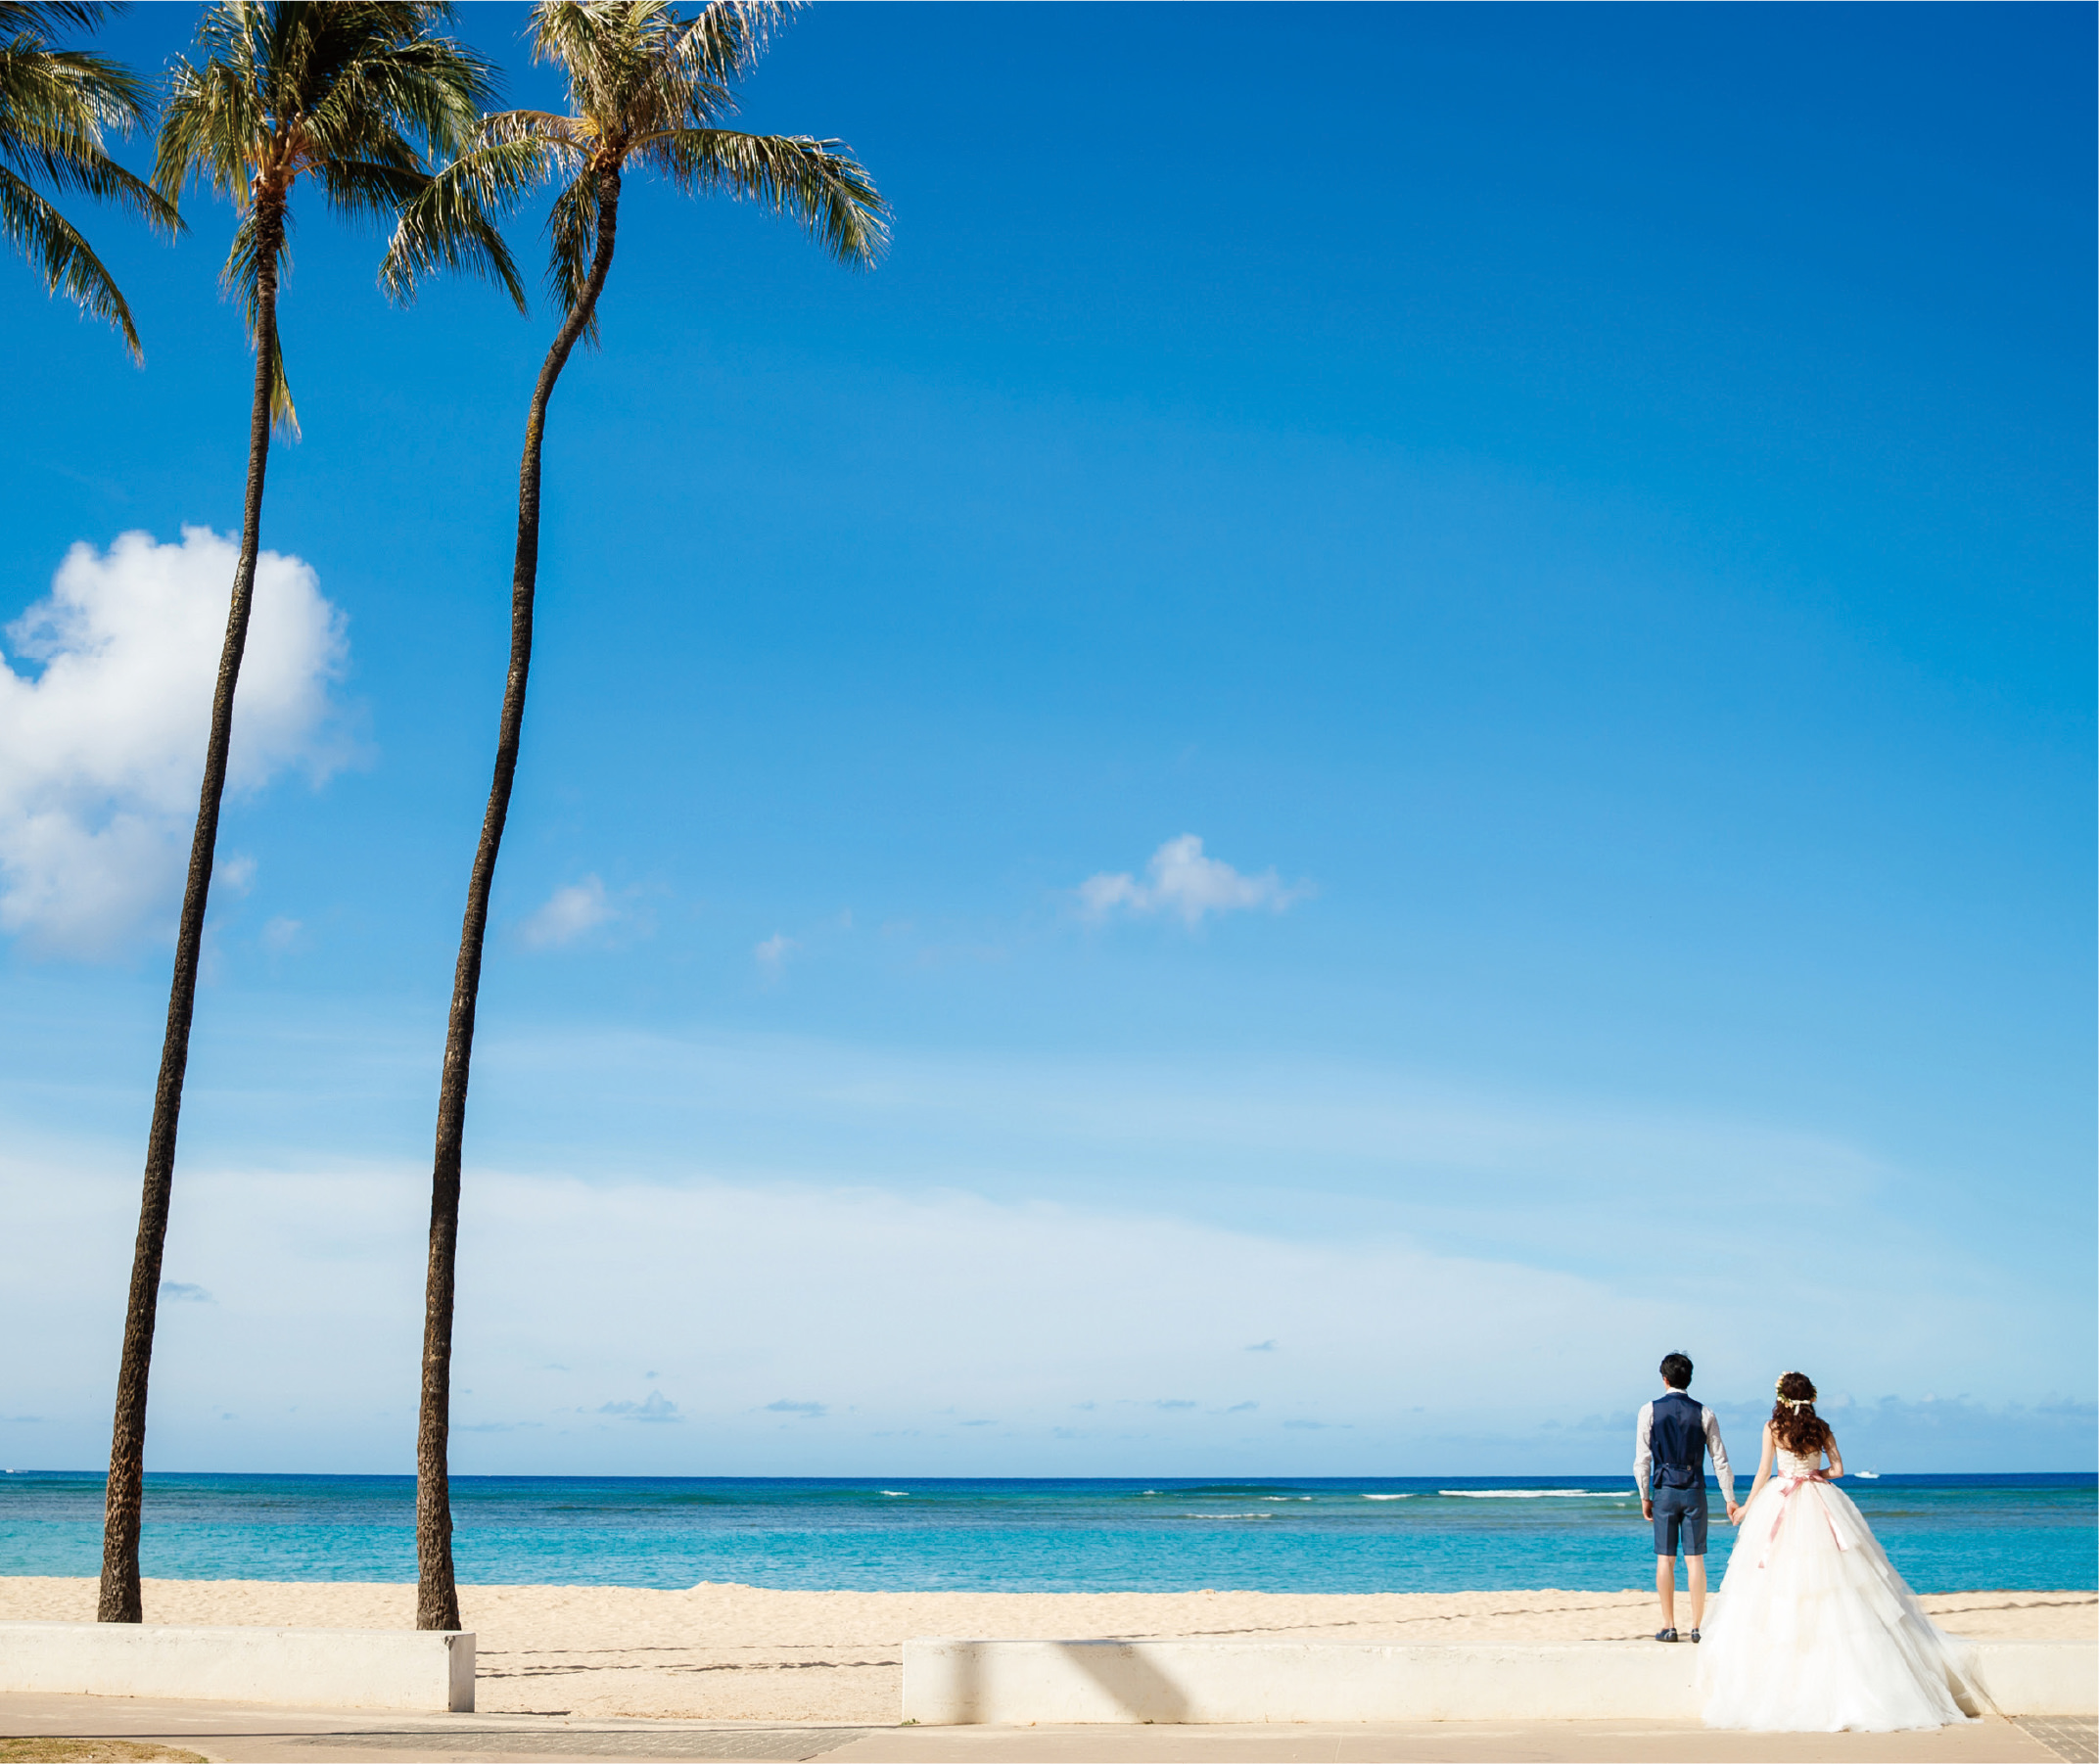 ハネムーン 海外挙式 Honeymoon Resortwedding Bebridal ビー ブライダル 広島の結婚式場やホテル ドレスなどのウェディング情報メディアサイト